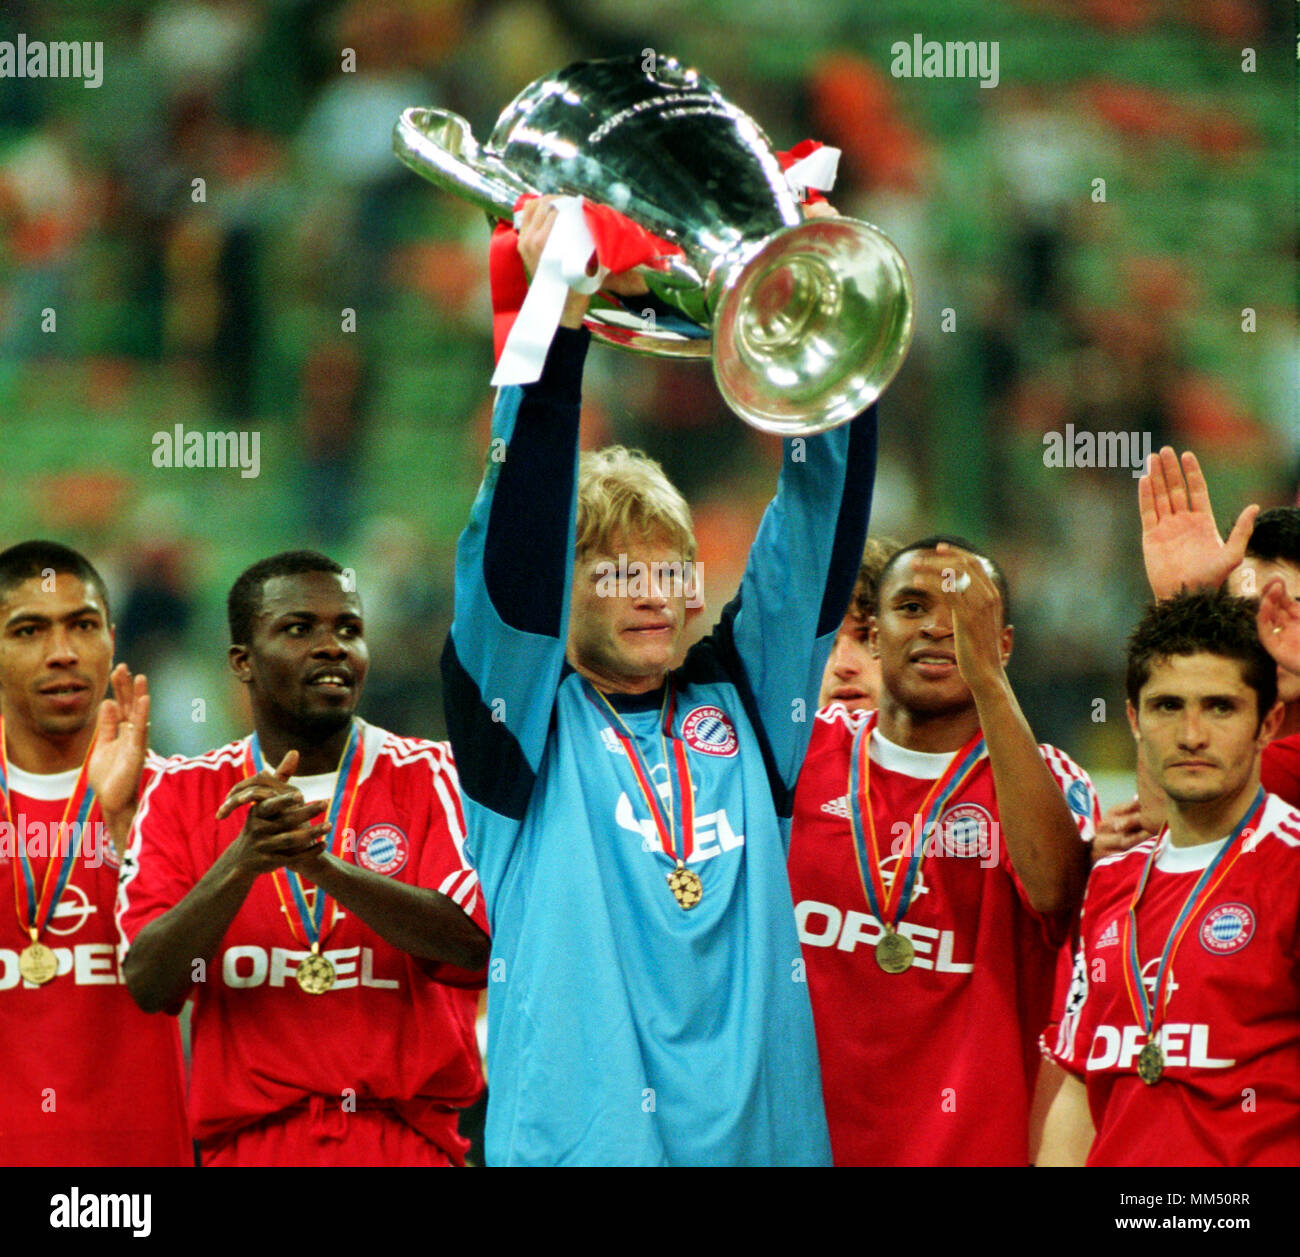 2001 champions league final